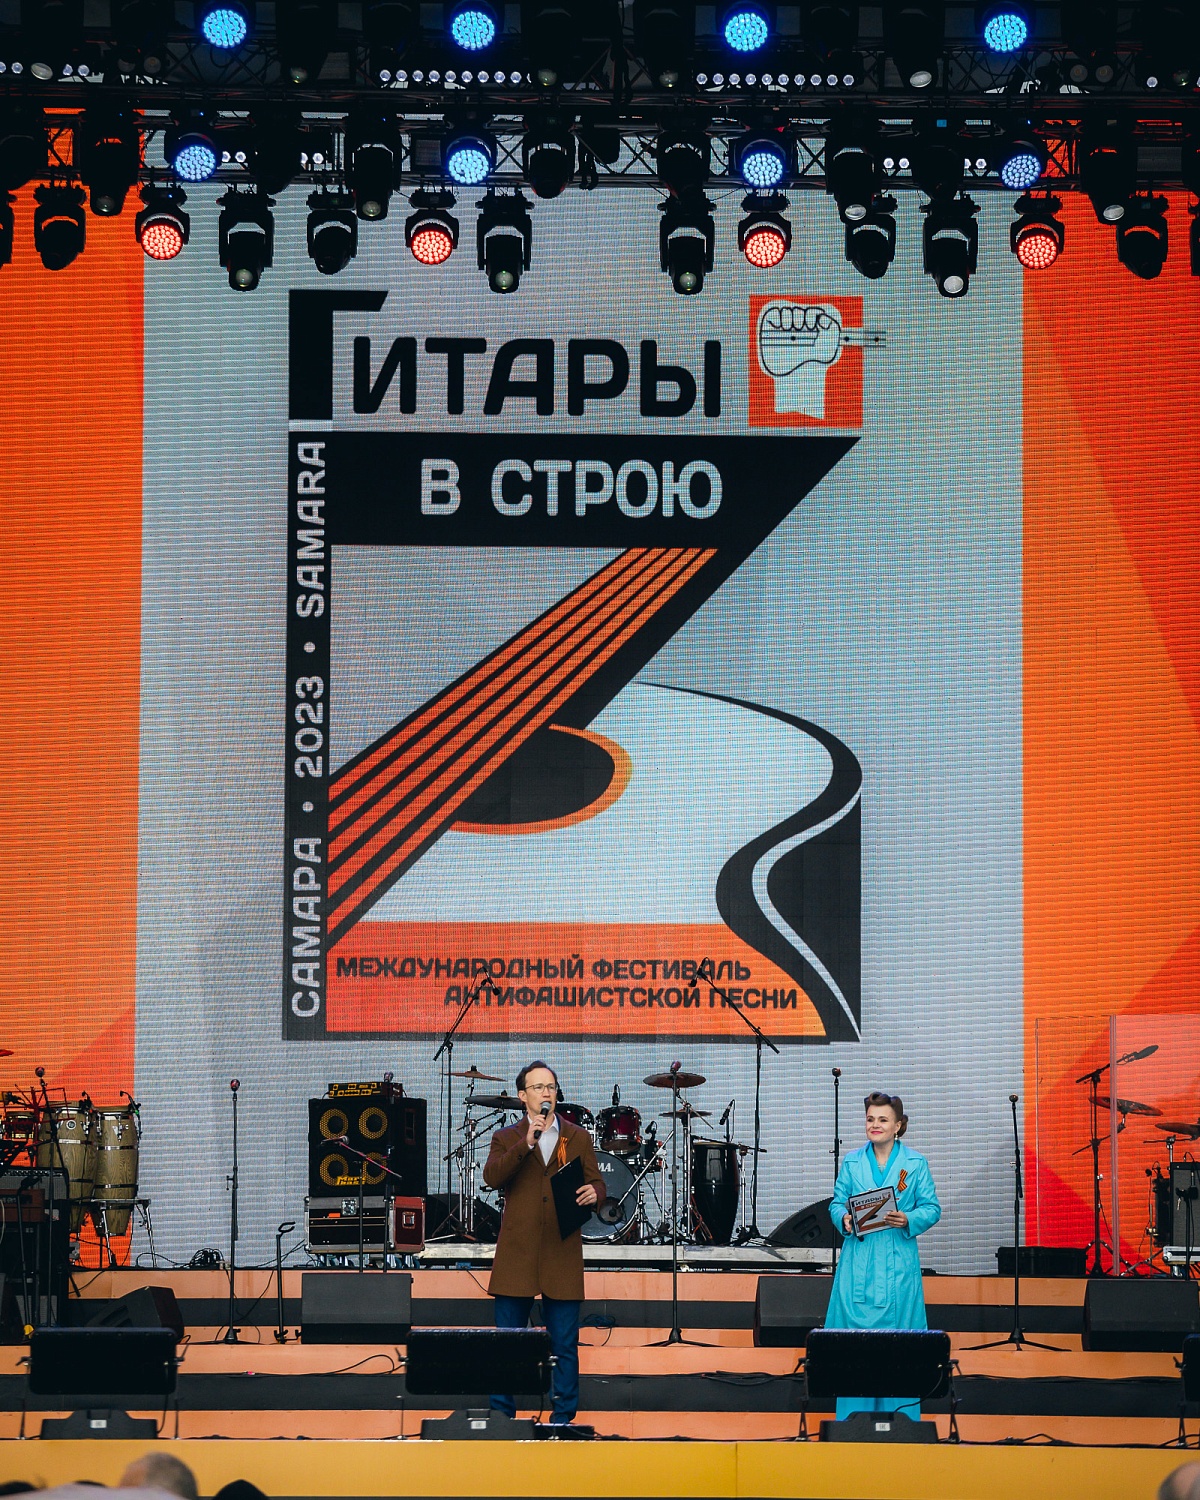 Международный фестиваль антифашистской песни "Гитары в строю!"